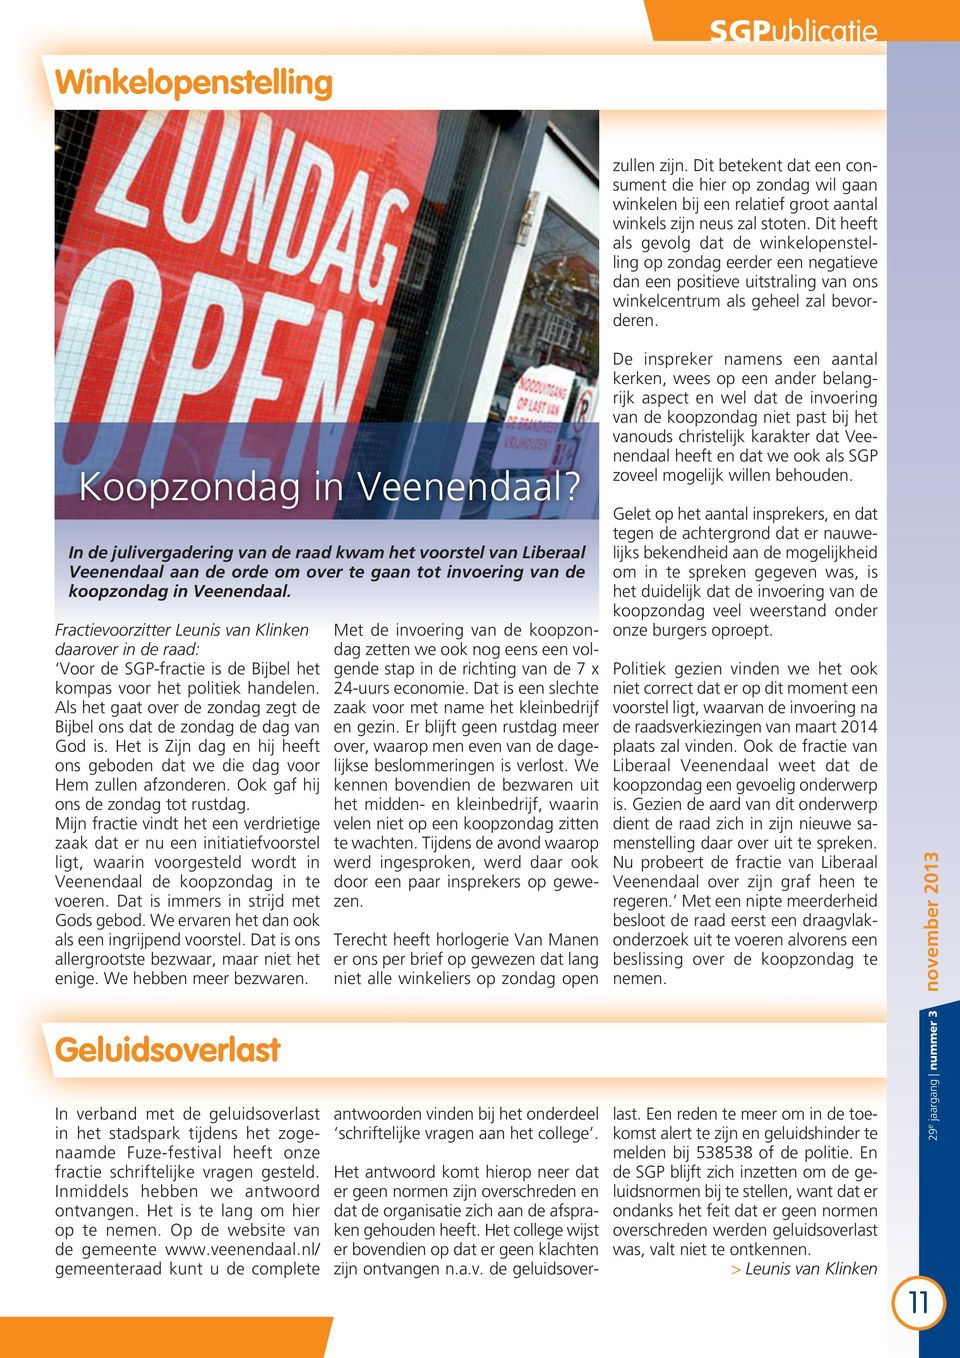 In de julivergadering van de raad kwam het voorstel van Liberaal Veenendaal aan de orde om over te gaan tot invoering van de koopzondag in Veenendaal.